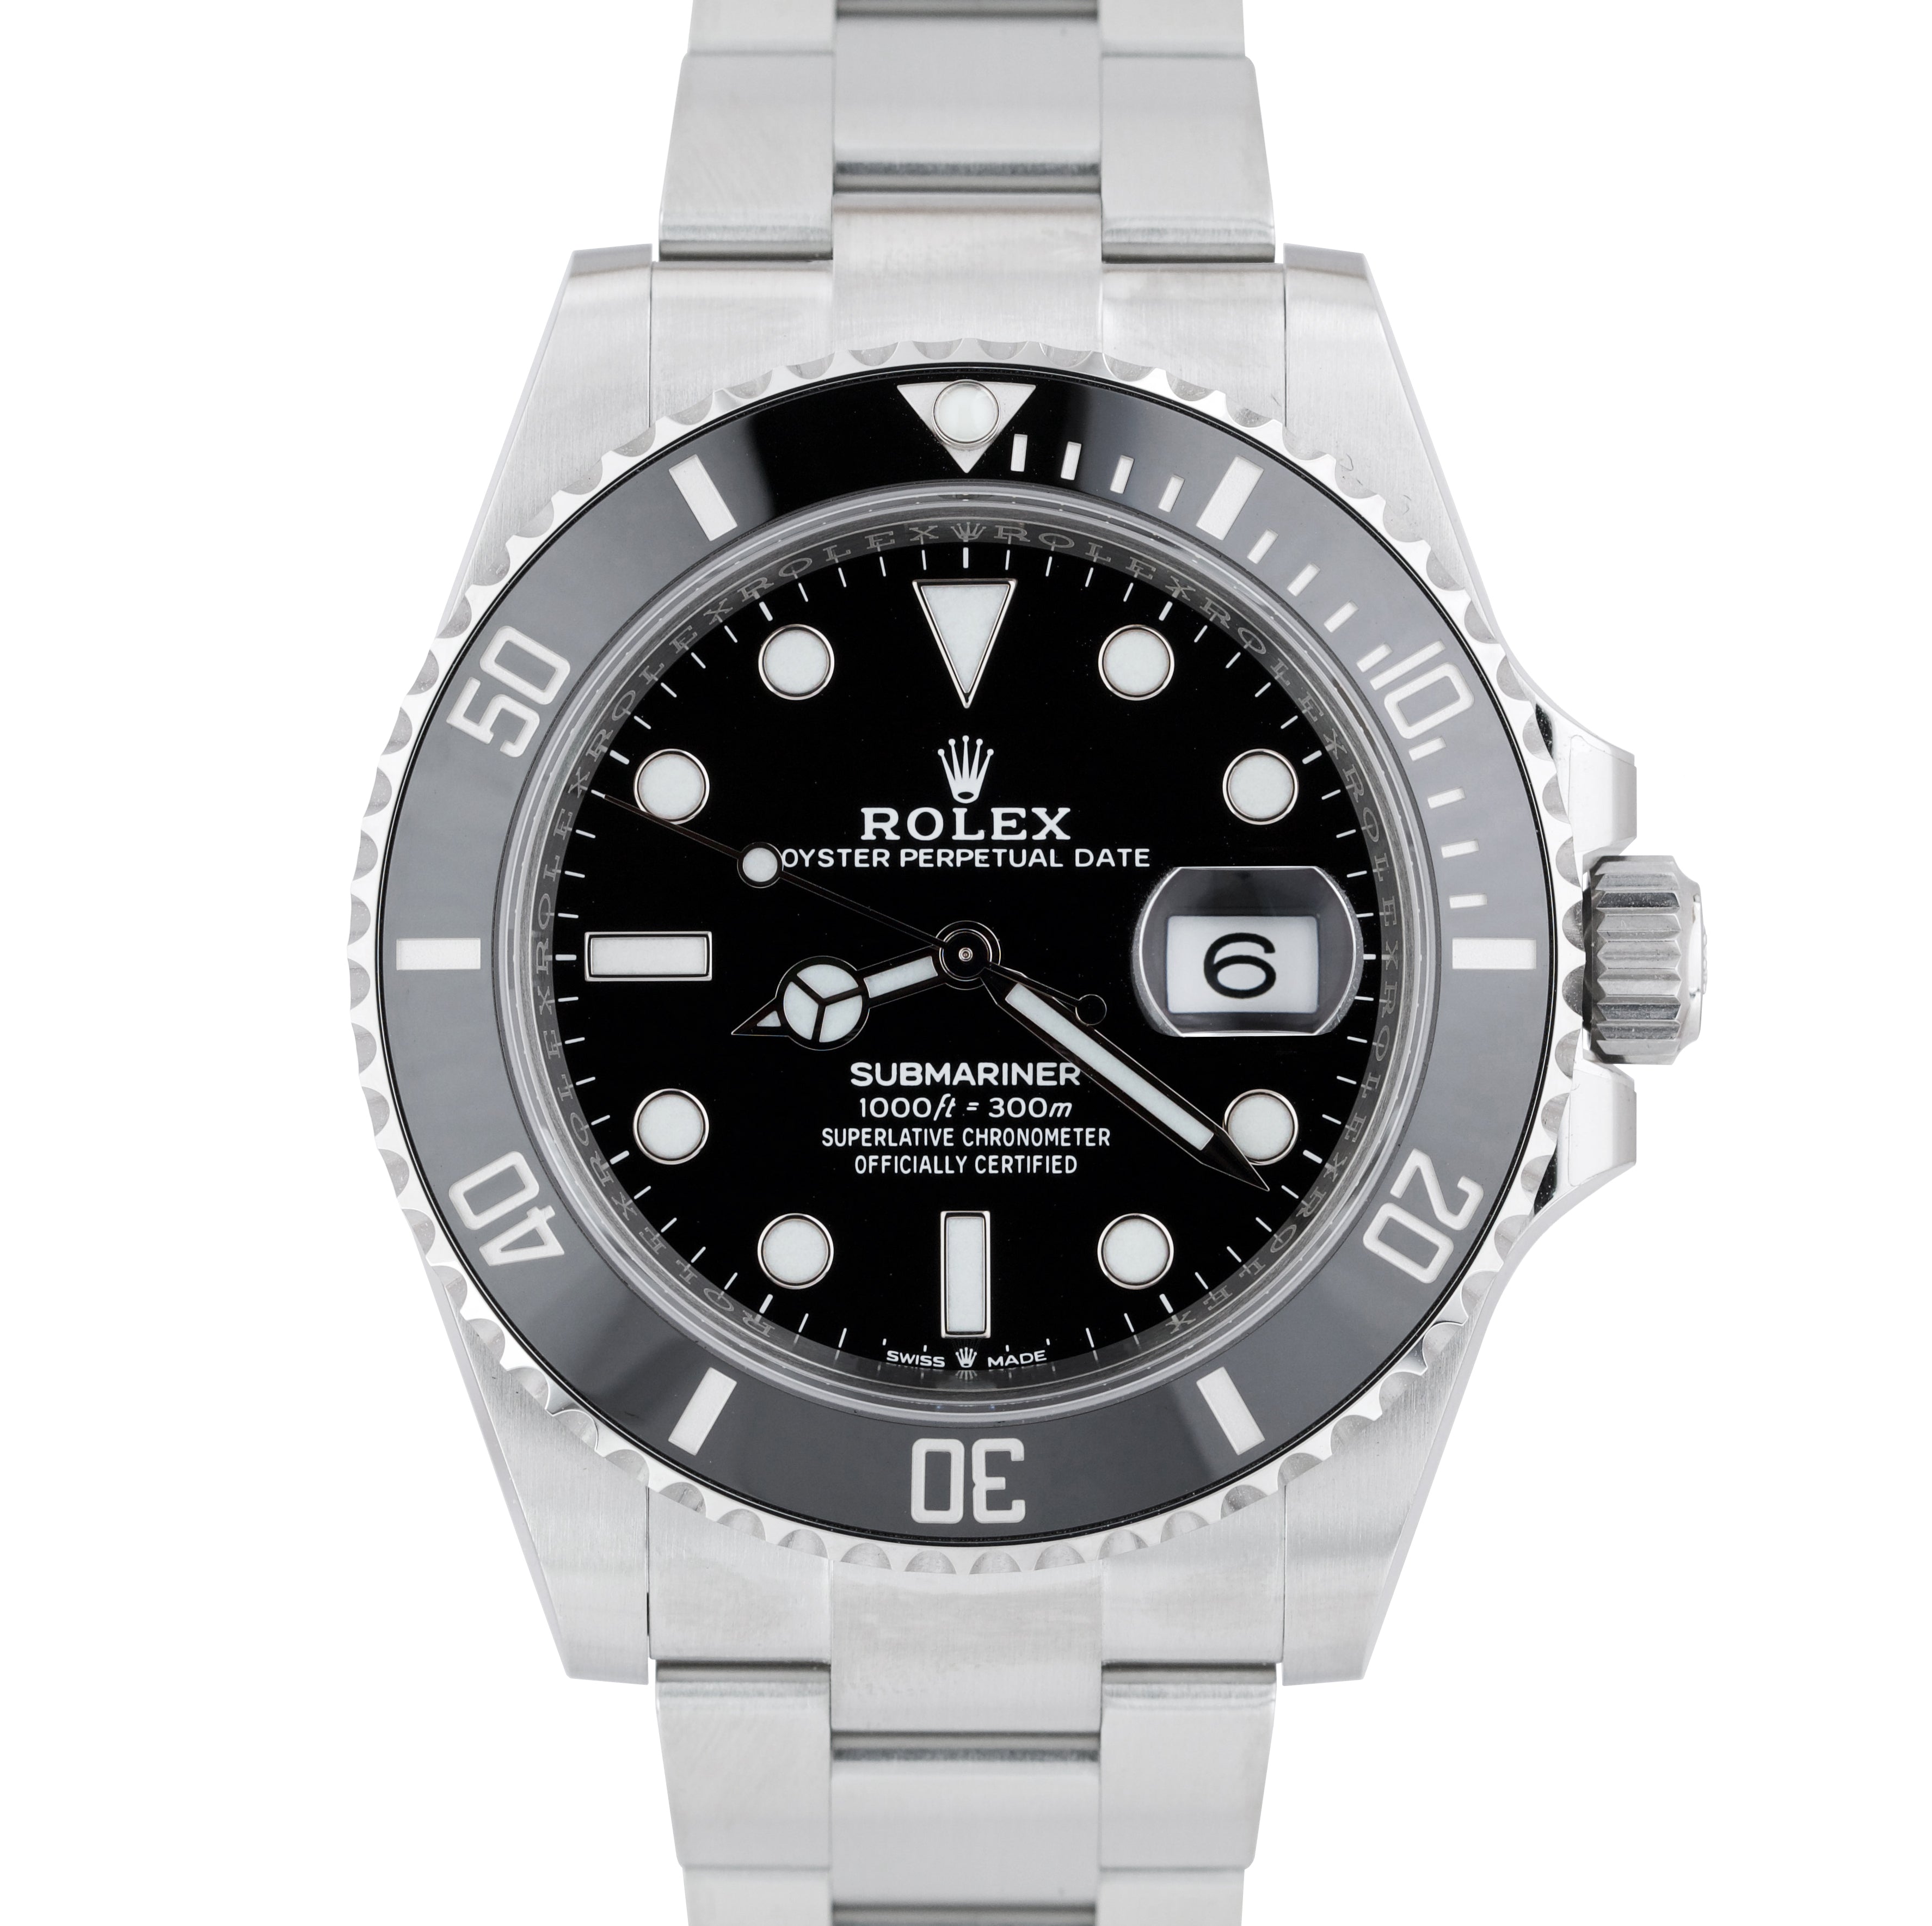 BRAND NEW 2020 CARD Rolex Submariner 41 Date Steel Black Ceramic Watch 126610 LN